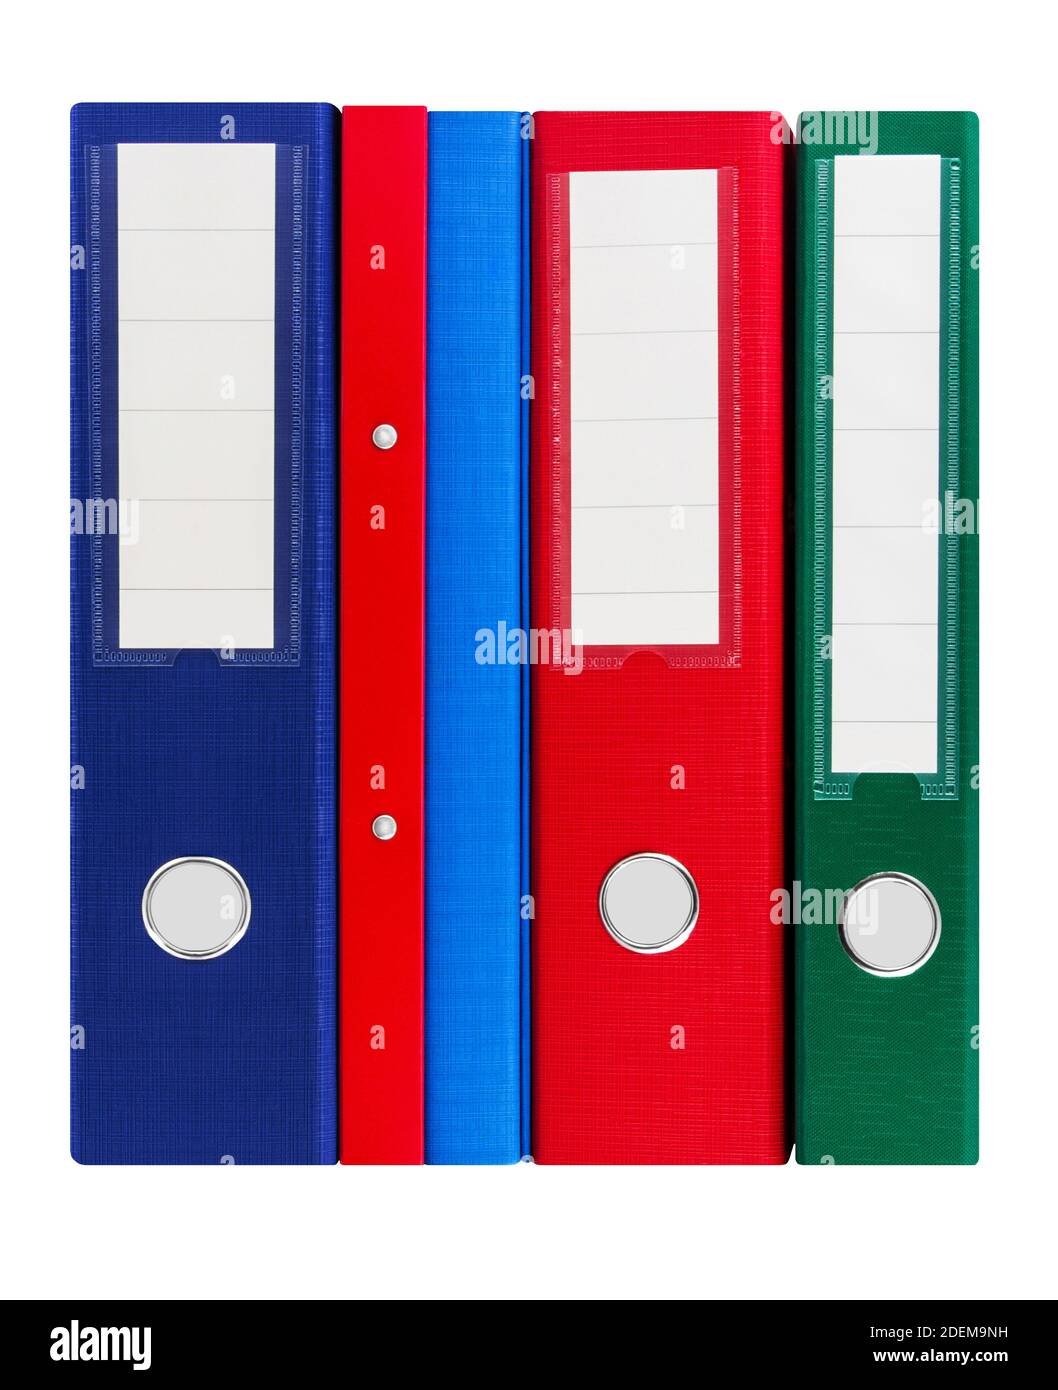 Varie cartelle di file colorate isolate su sfondo bianco Foto Stock